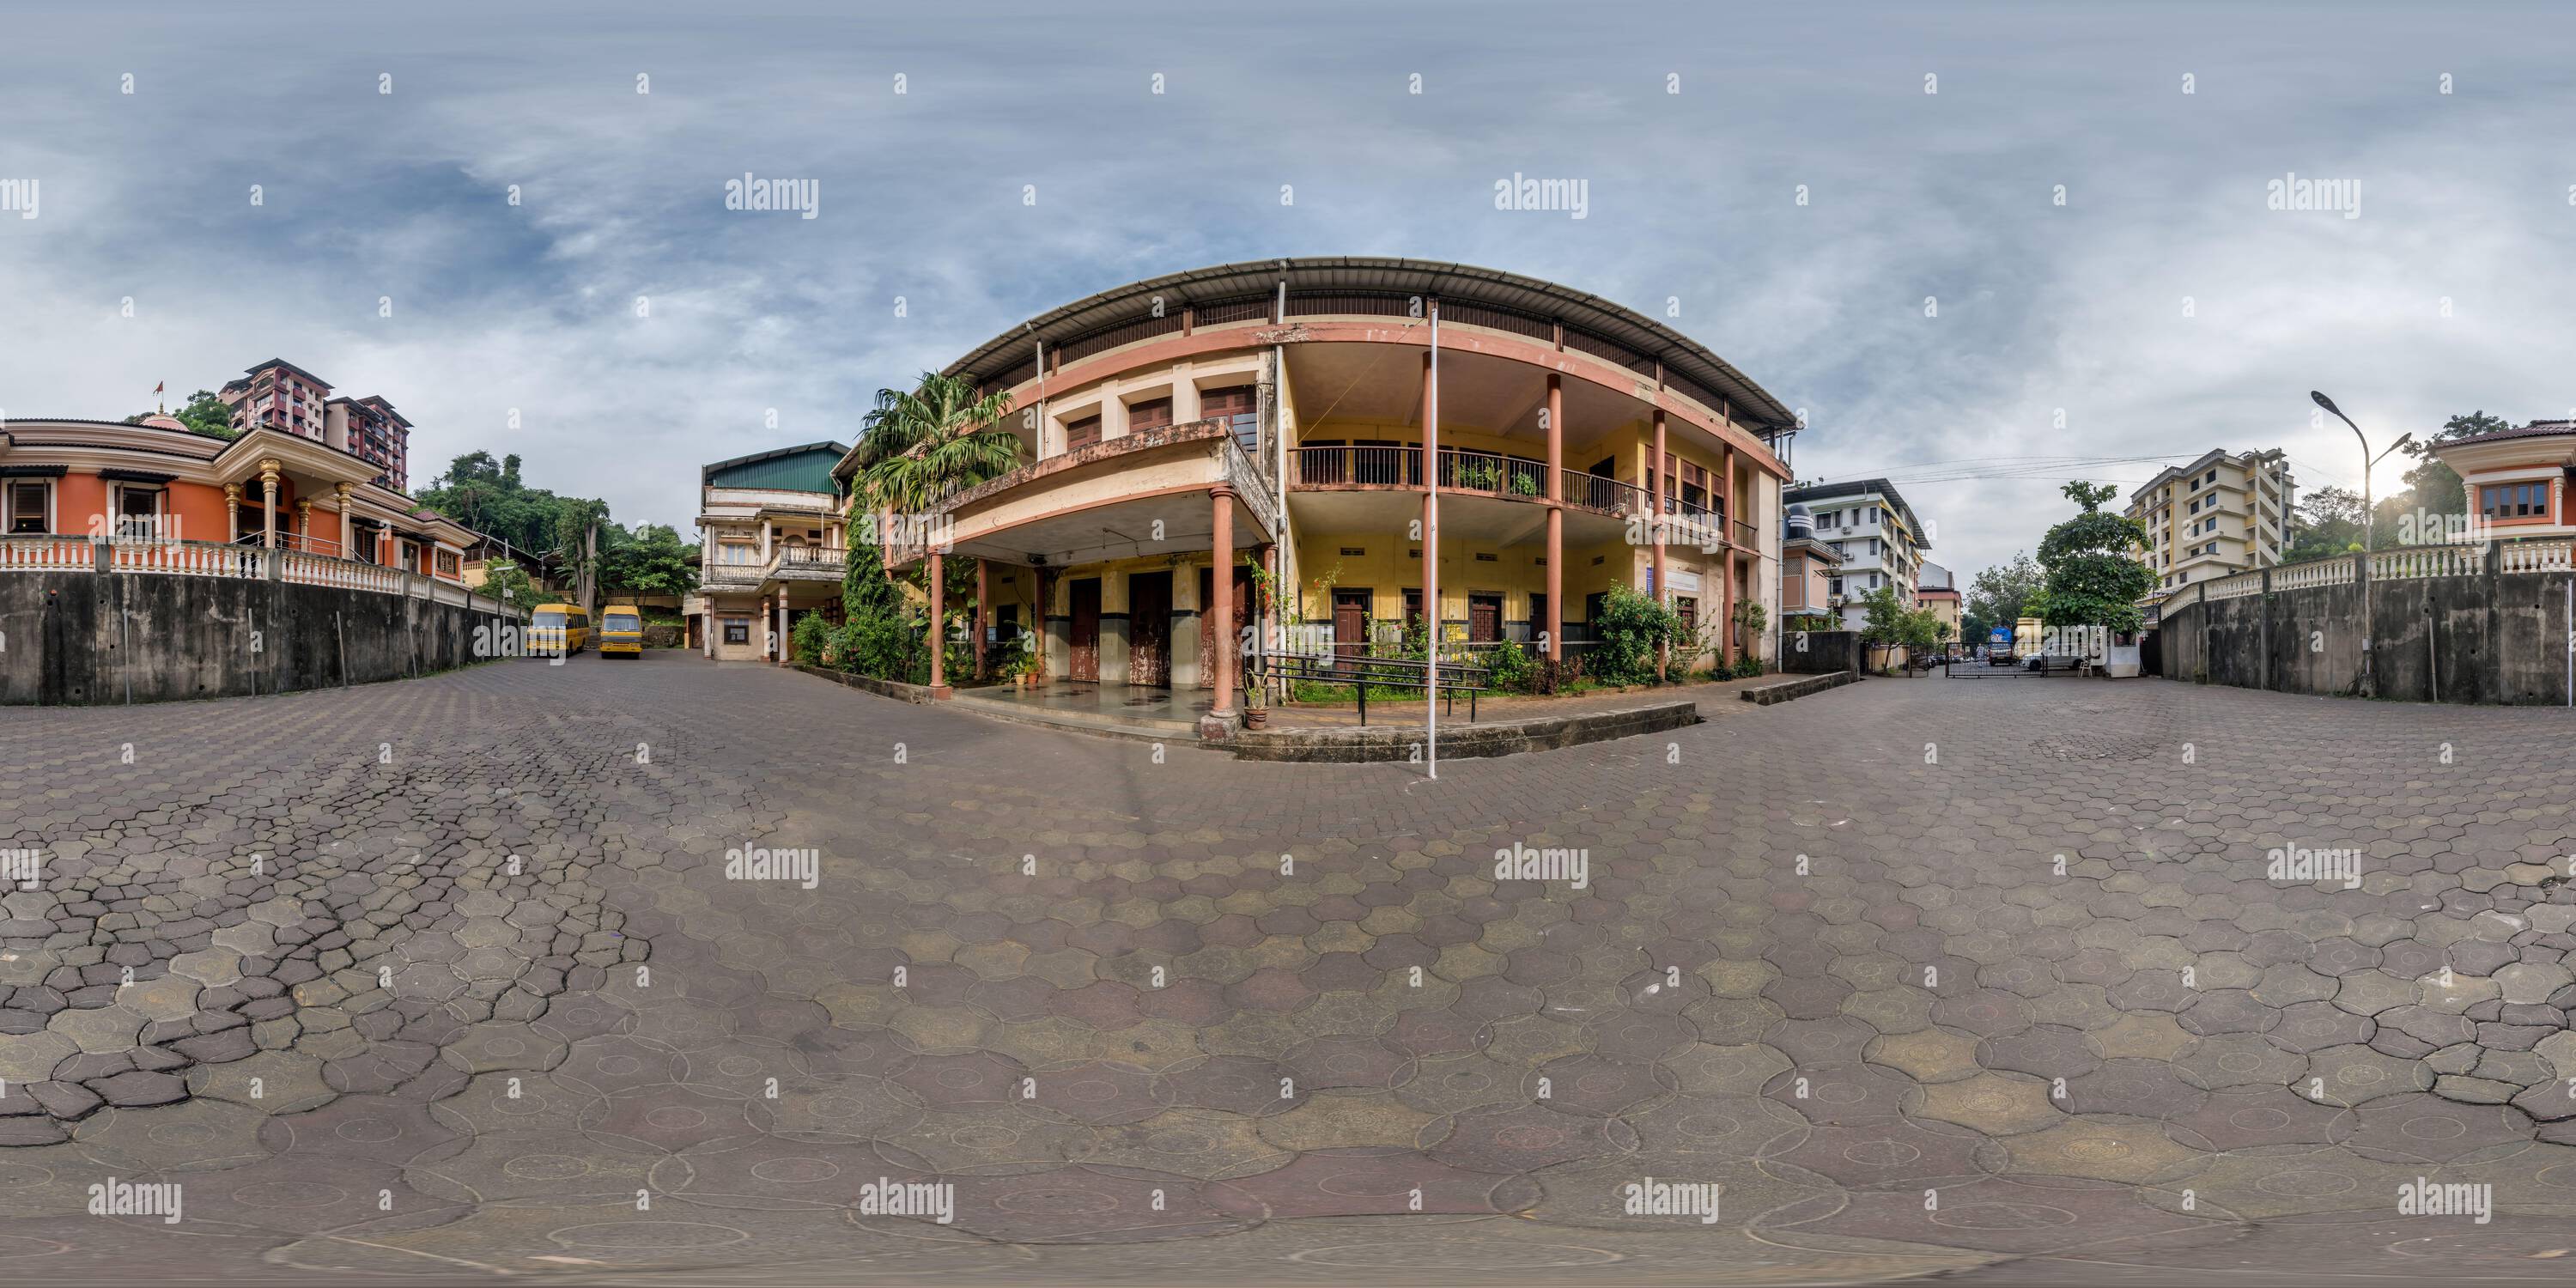 Vue panoramique à 360° de plein panorama sphérique hdr 360 sans couture à l'intérieur de vieilles maisons dans une cour étroite ou arrière-cour de la ville près de la rue dans une ville indienne dans proje équirectangulaire